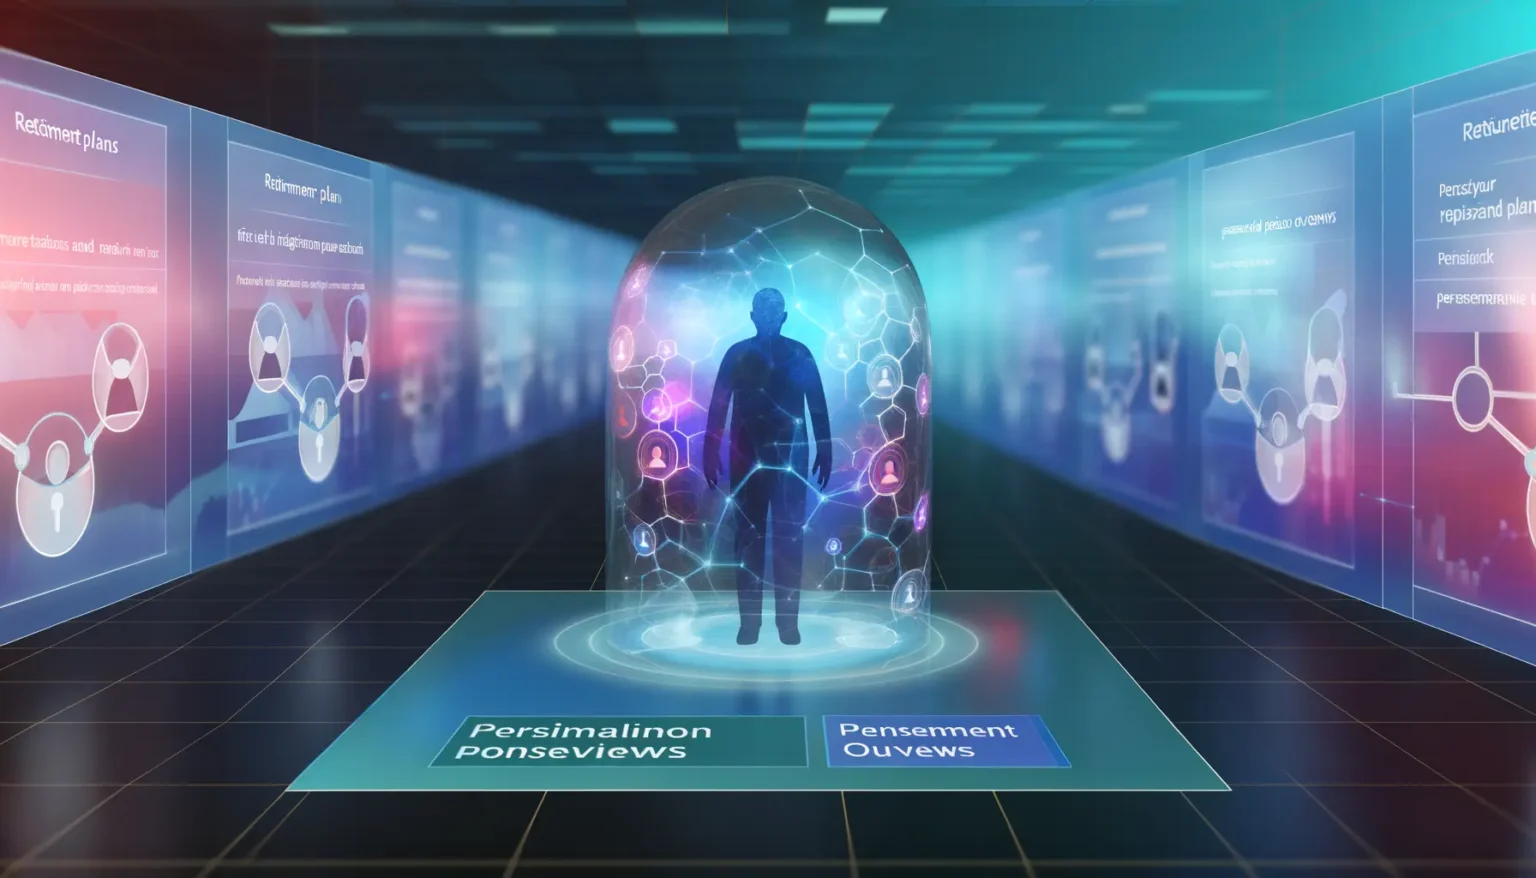 Ein futuristischer Raum mit einem menschlichen Silhouette innerhalb einer beleuchteten, transparenten Schutzkapsel, von verschiedenen Informationen und Schemata auf digitalen Displays umgeben. Das Ambiente ist von blauem und purpurnem Licht dominiert, was eine High-Tech-Atmosphäre schafft.